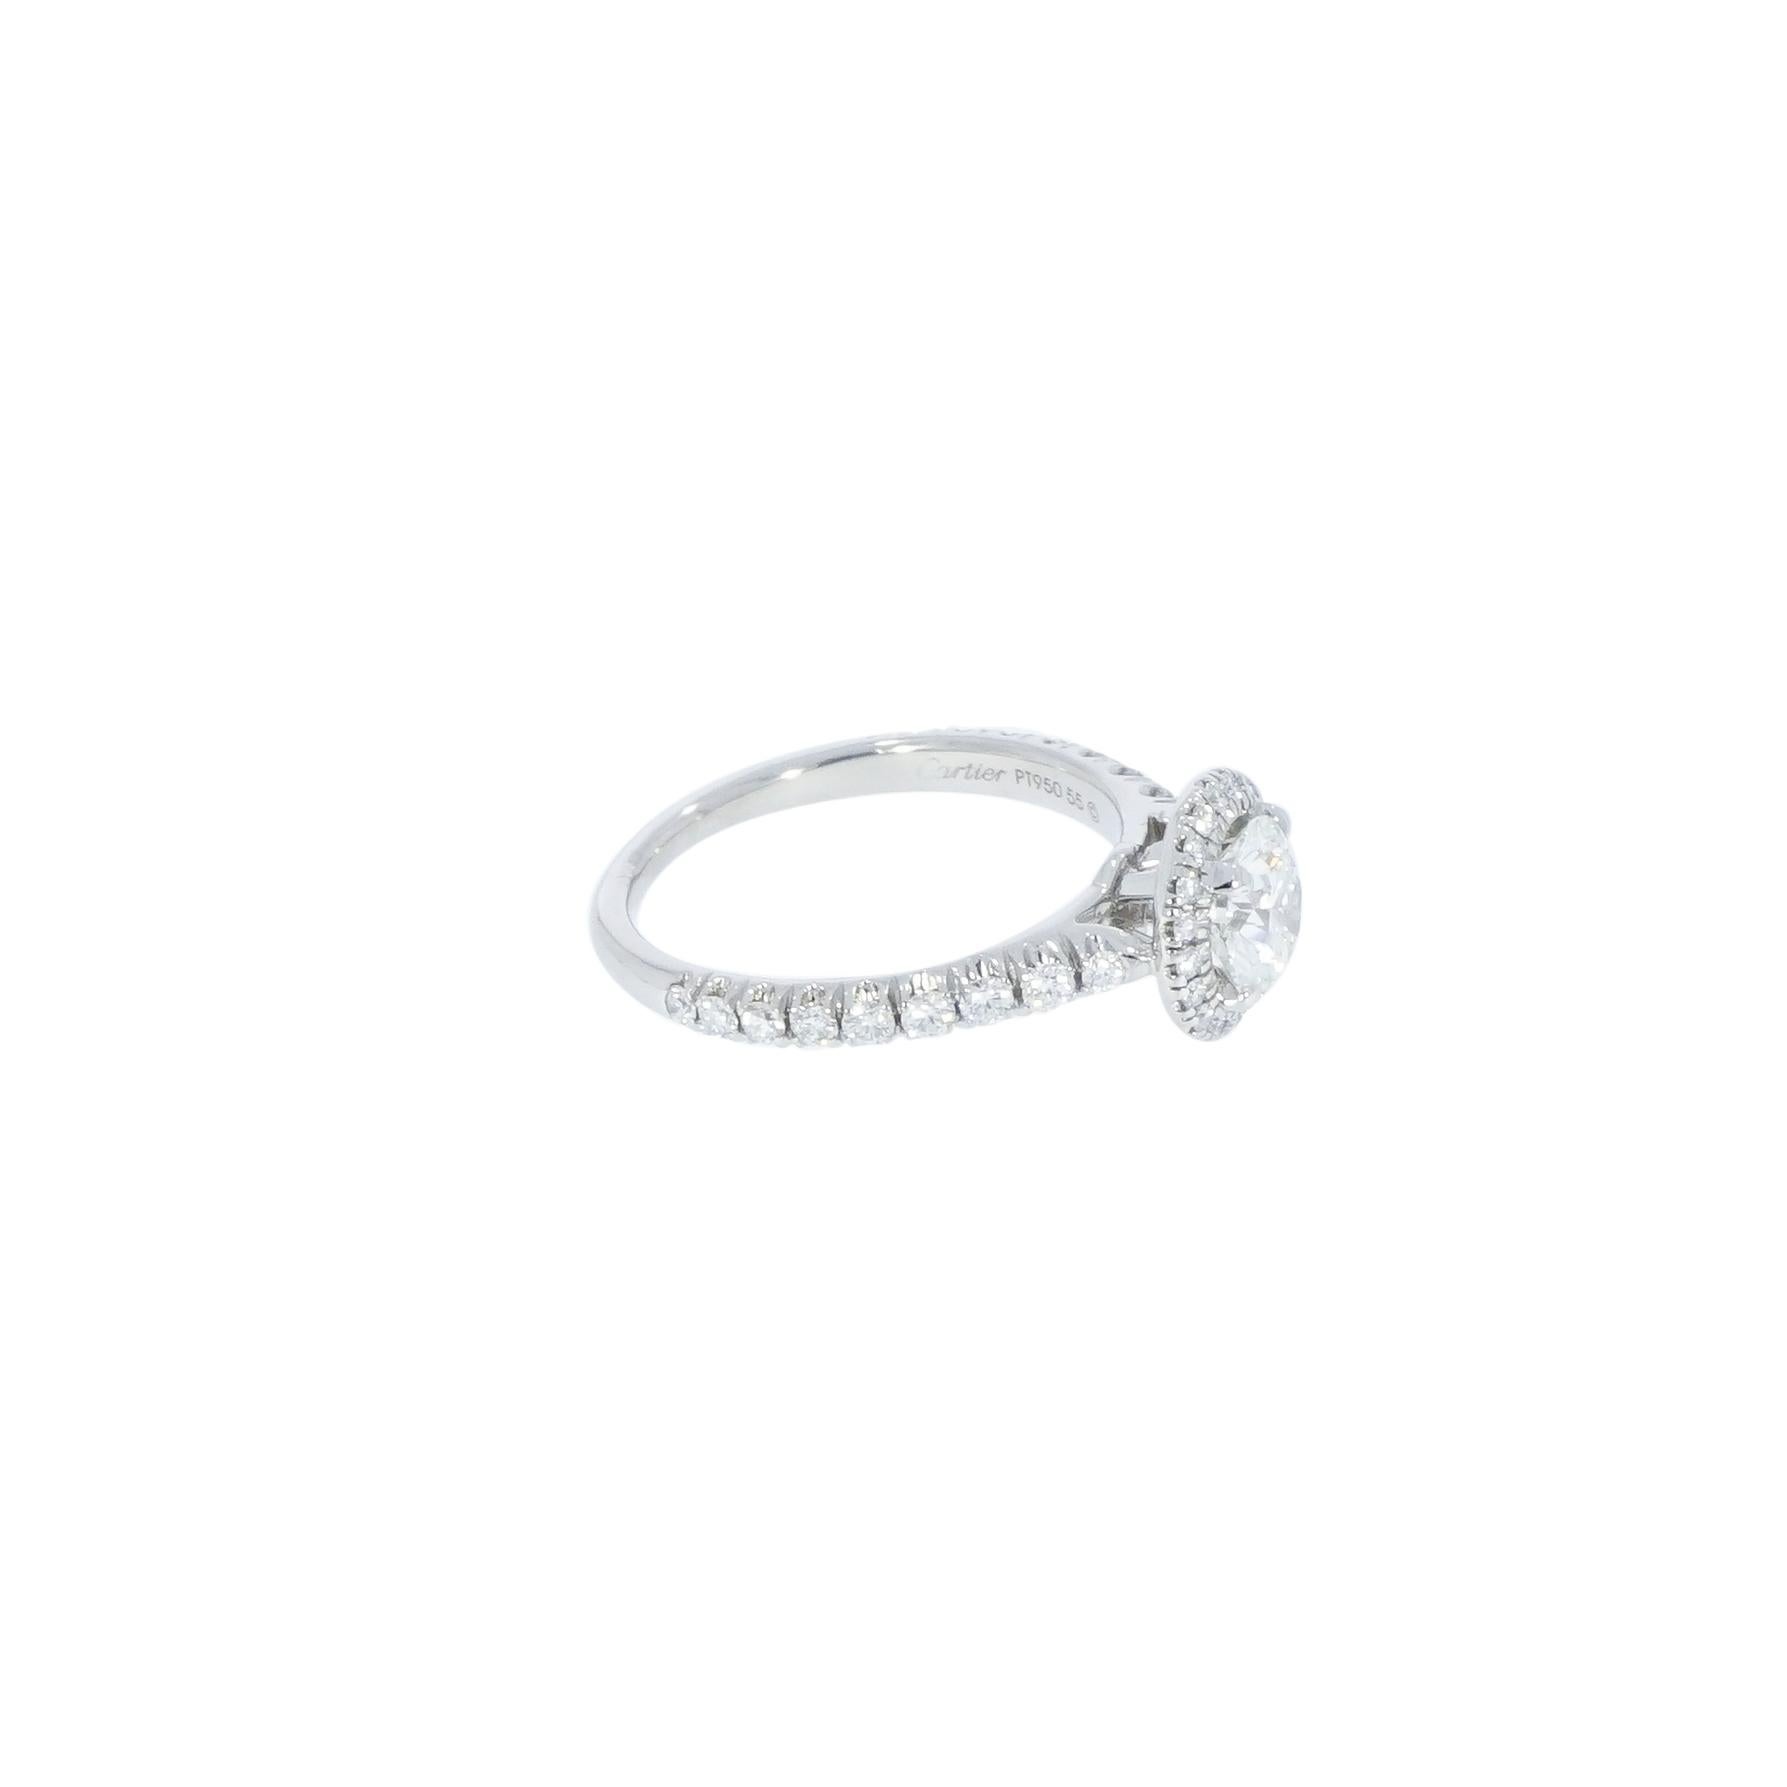 Destinée, une magnifique bague de fiançailles en diamant conçue par Cartier, renfermant un diamant rond de 1,03 carat rehaussé d'un halo de diamants qui lui confère un éclat exceptionnel. 
Cette bague se déploie en courbes harmonieuses et incarne la